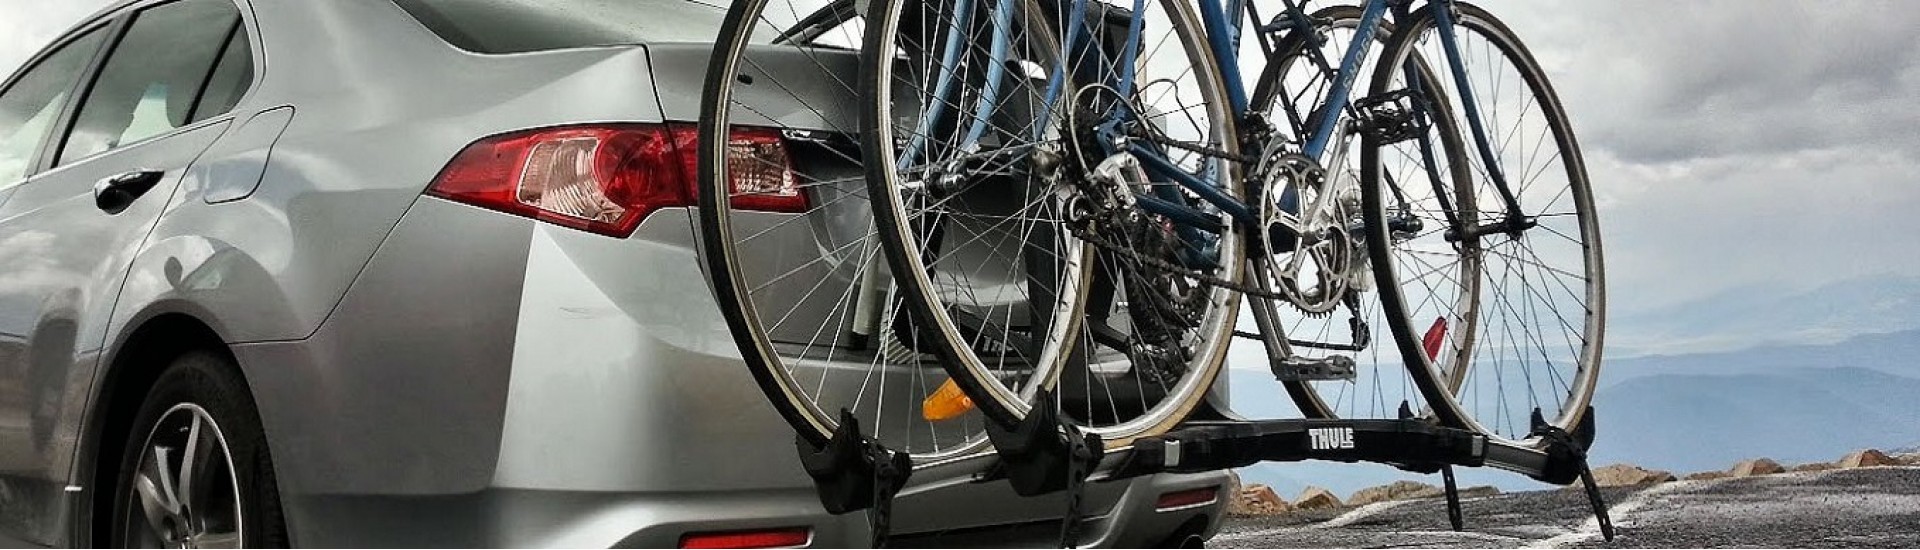 دوچرخه بند صندوقی مزدا 6 i SPORT 2021 